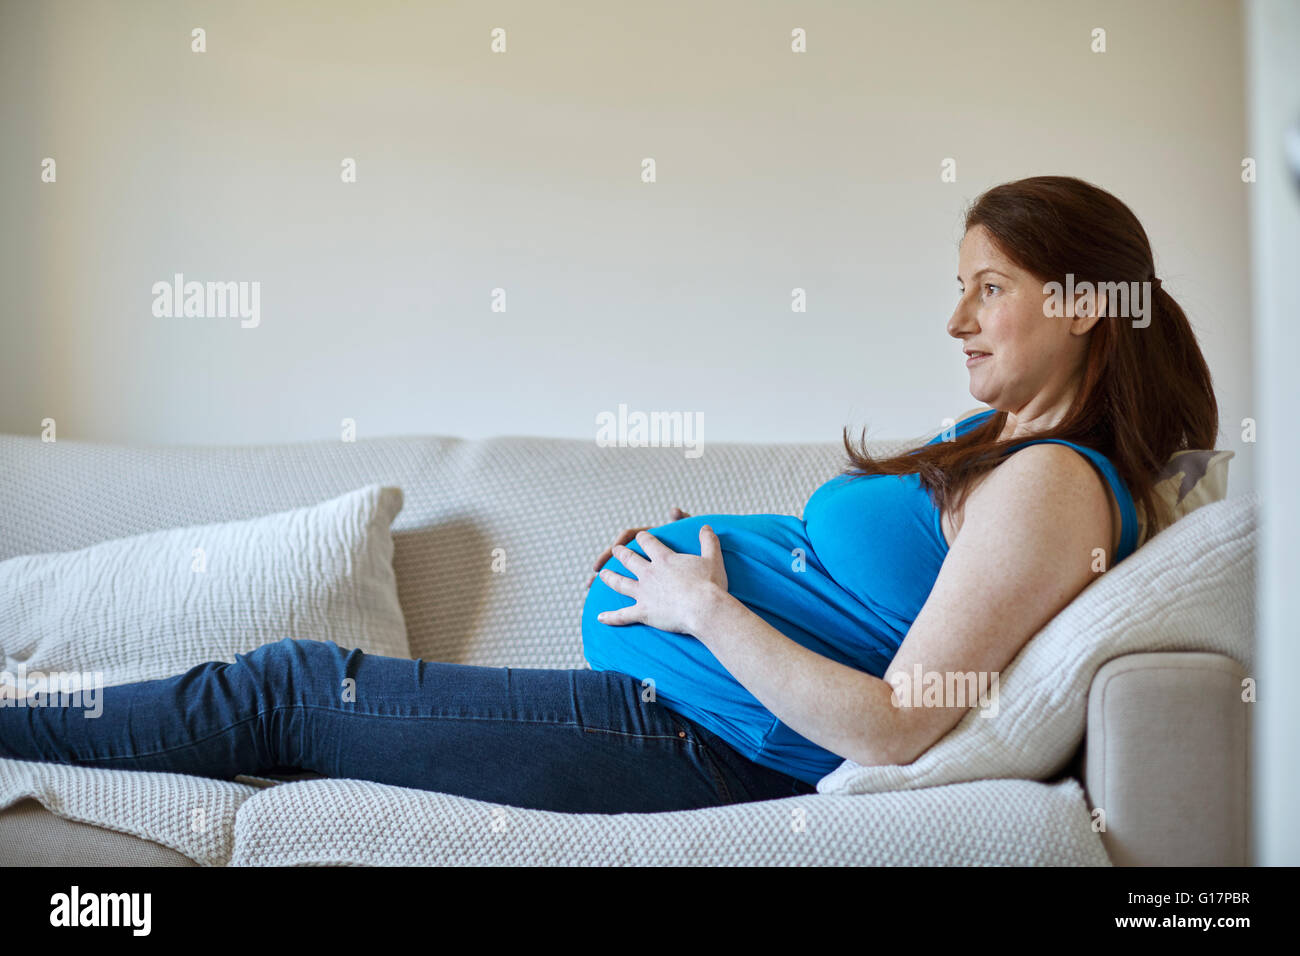 Seitenansicht der schwangeren Bauch halten, entspannt auf dem Sofa suchen Sie lächelnd Stockfoto